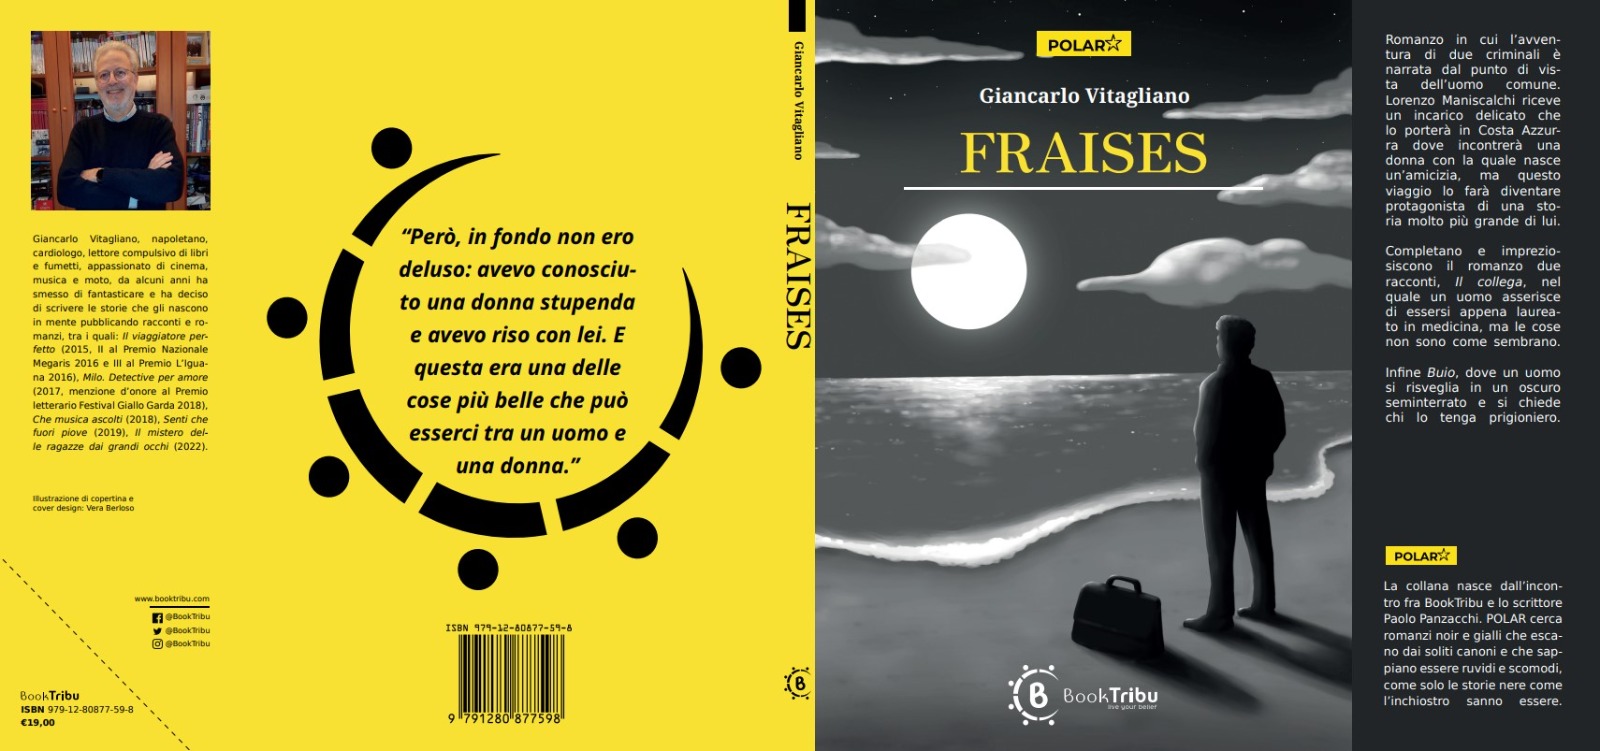 IoCiSto, 1 marzo presentazione del romanzo di Giancarlo Vitagliano "Fraises"